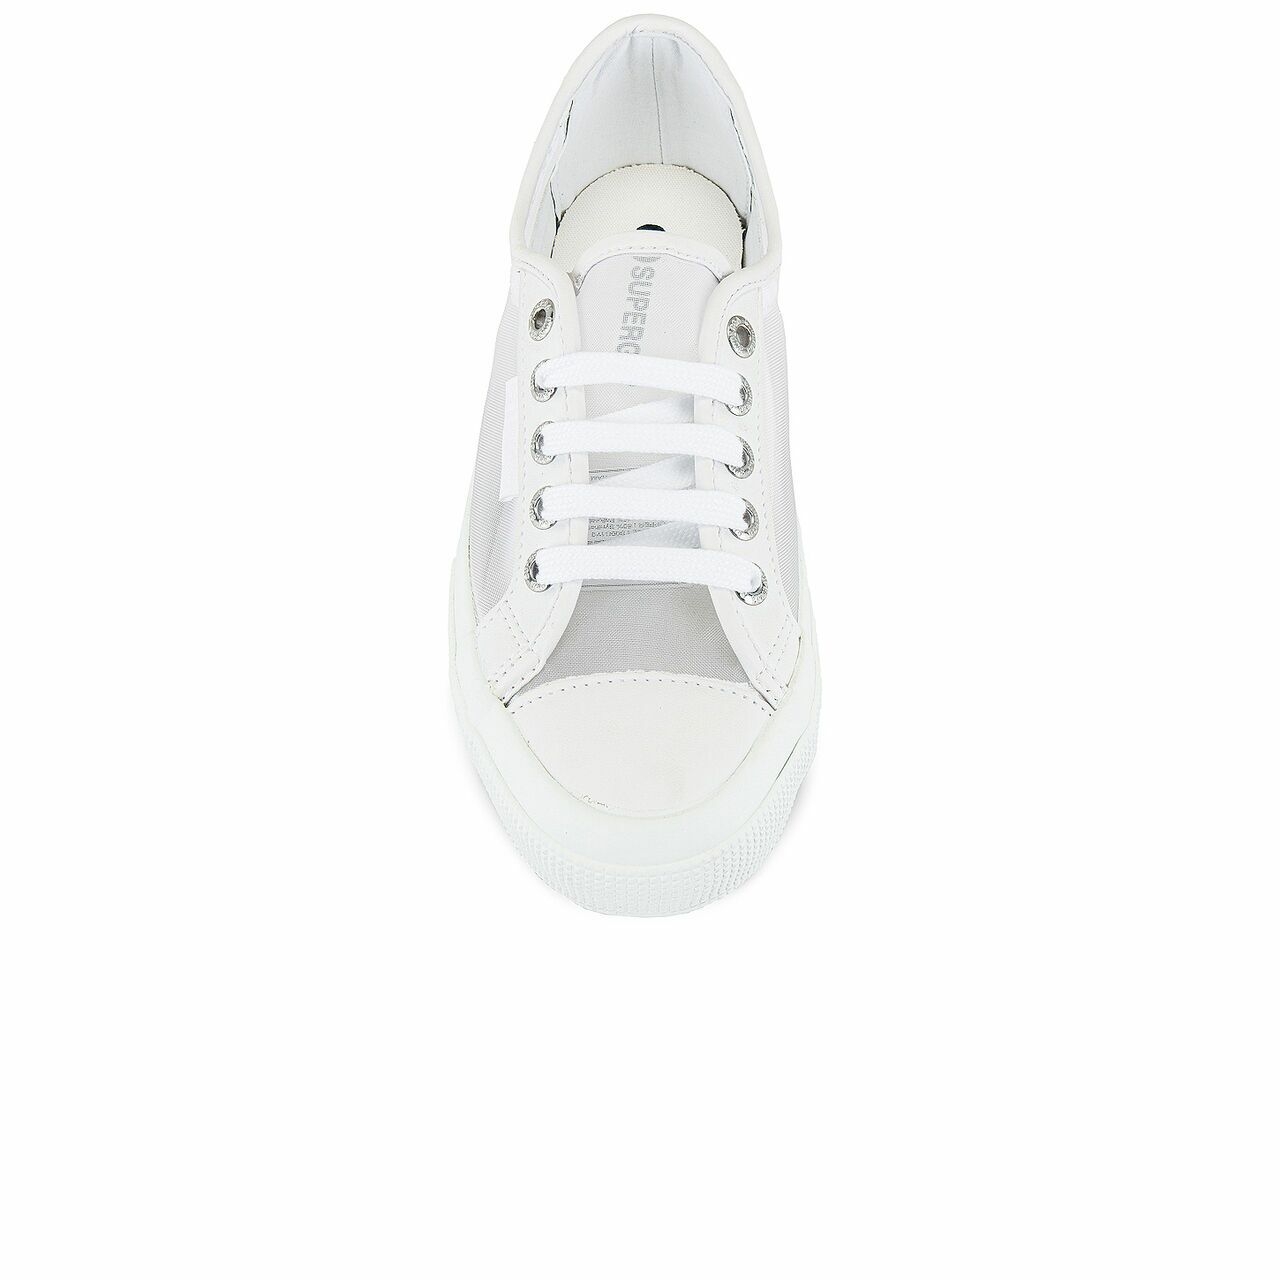 Superga White Sneakers